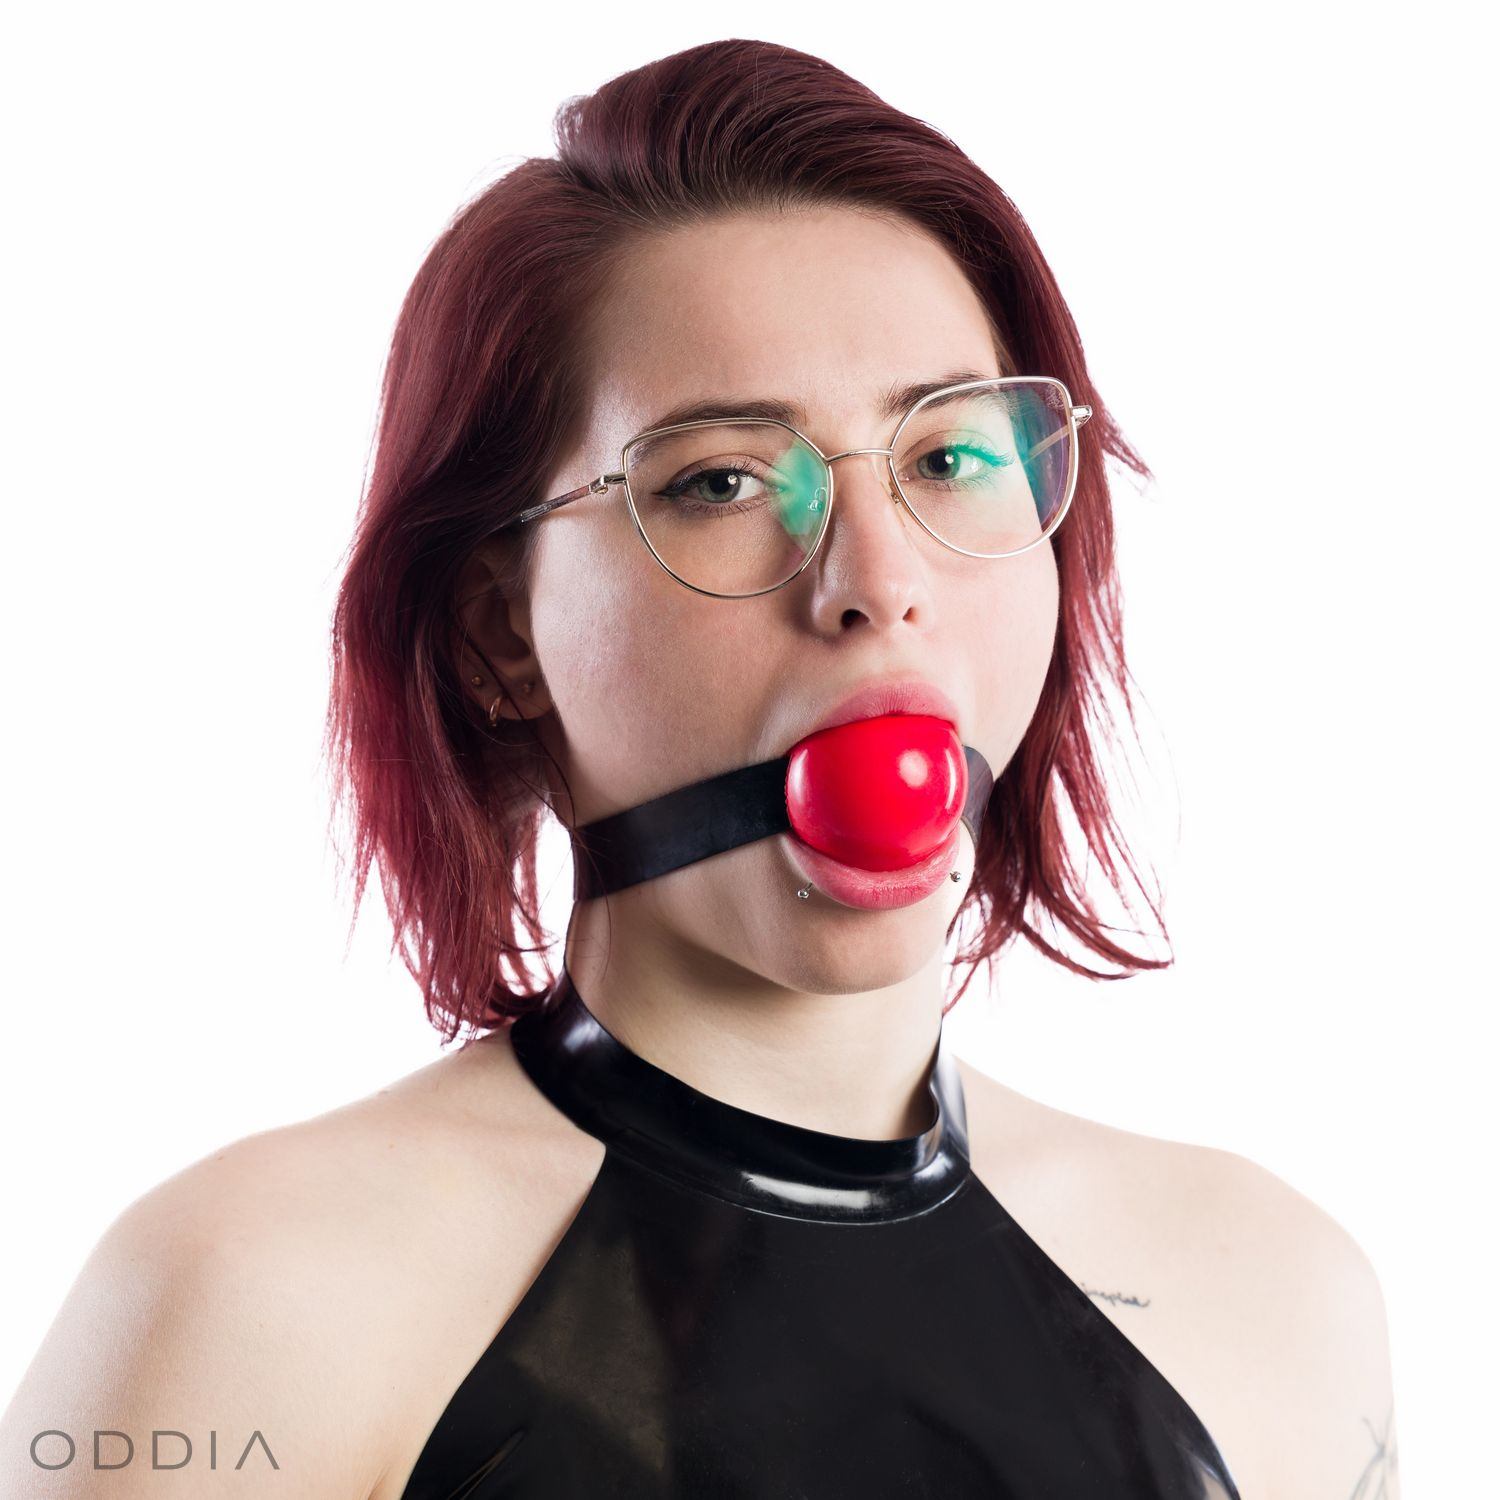 Mädchen mit rotem Knebelball im Mund